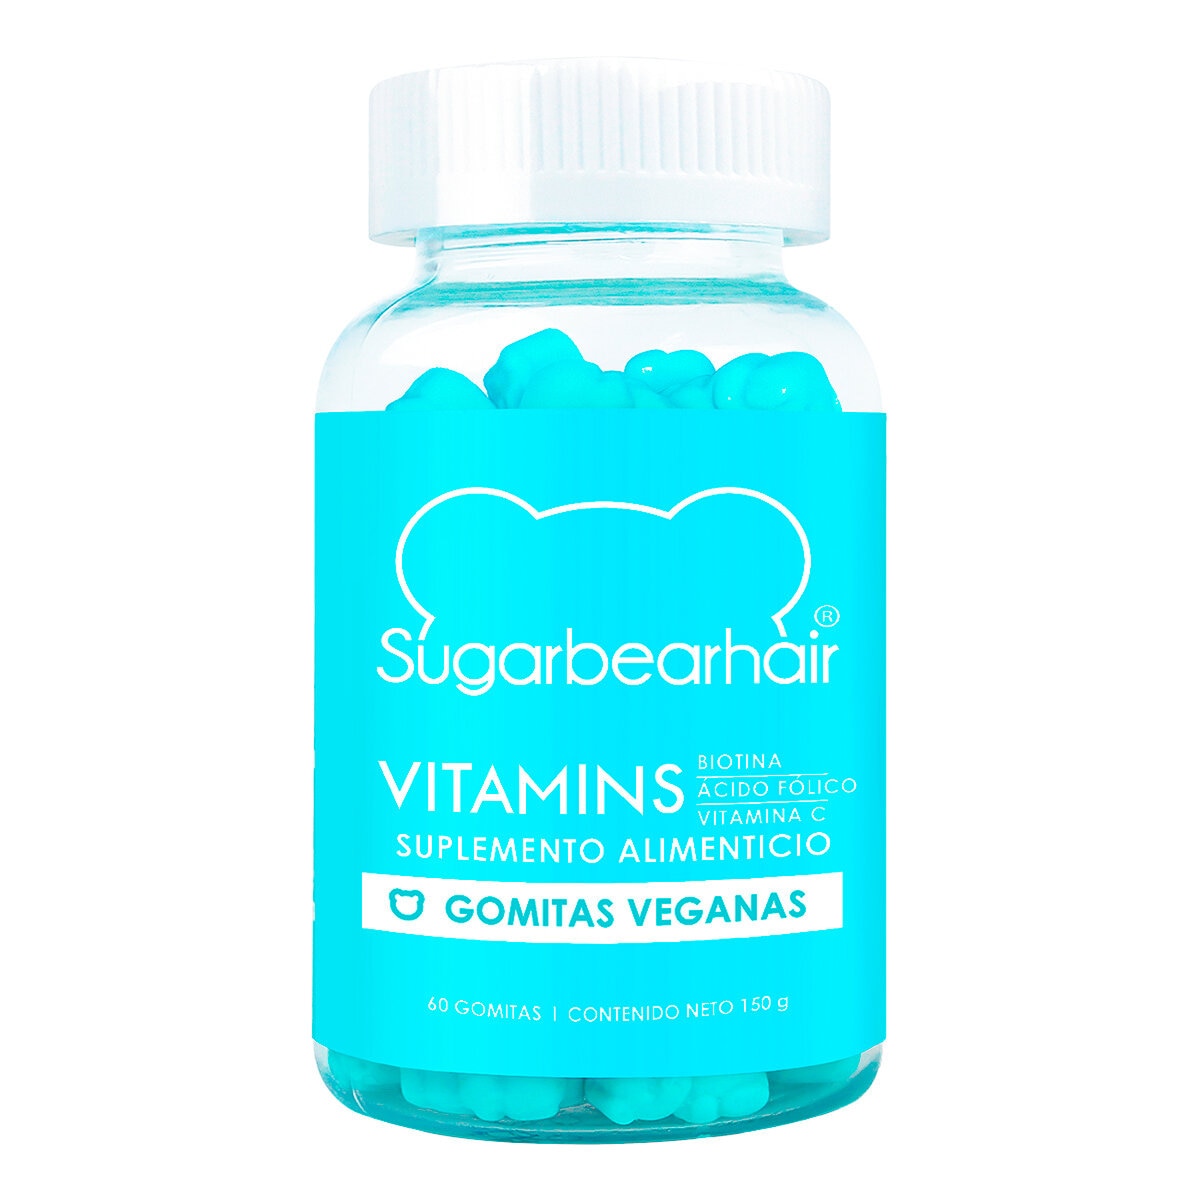 Sugarbear Hair Biotina, Ácido Folico, Vitamina C 60 Gomitas